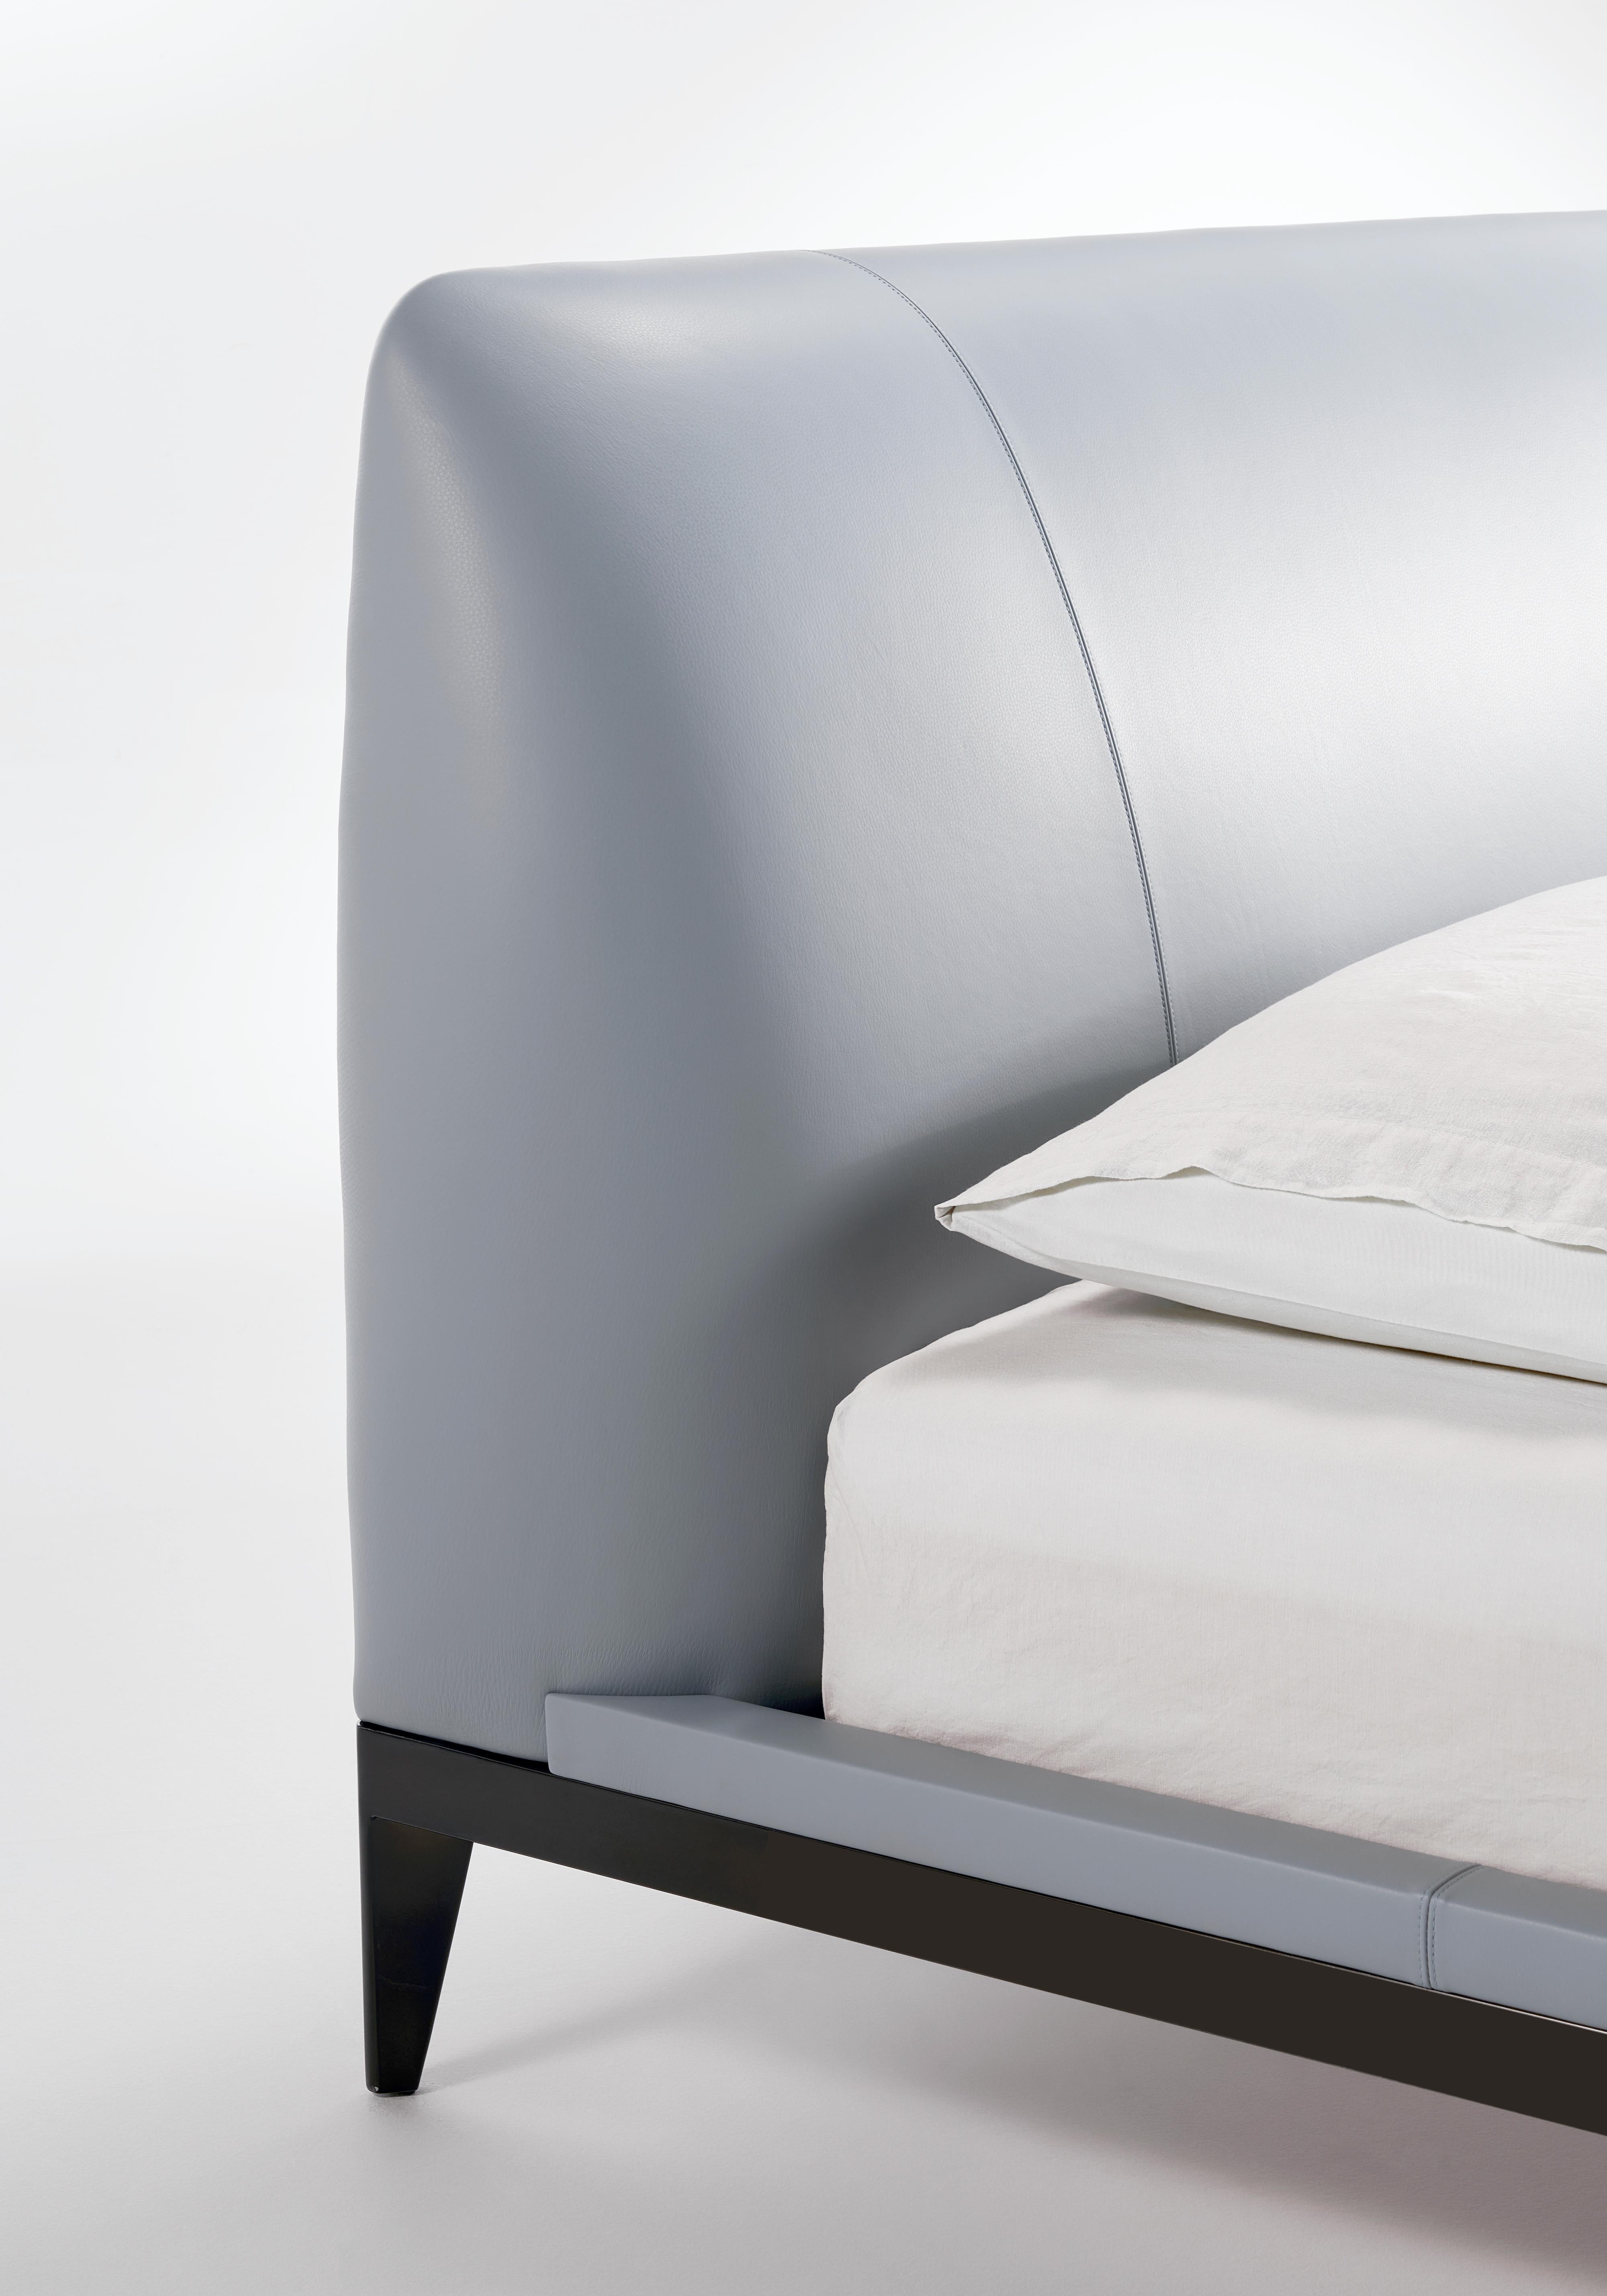 Das vom brasilianischen Designer Ricardo Antonio entworfene Bett Adesso zeichnet sich durch essentielle Formen aus, die durch den Metallrahmen, der Dynamik und Leichtigkeit verleiht, attraktiv wirken. Das großzügig gepolsterte Kopfteil ist äußerst